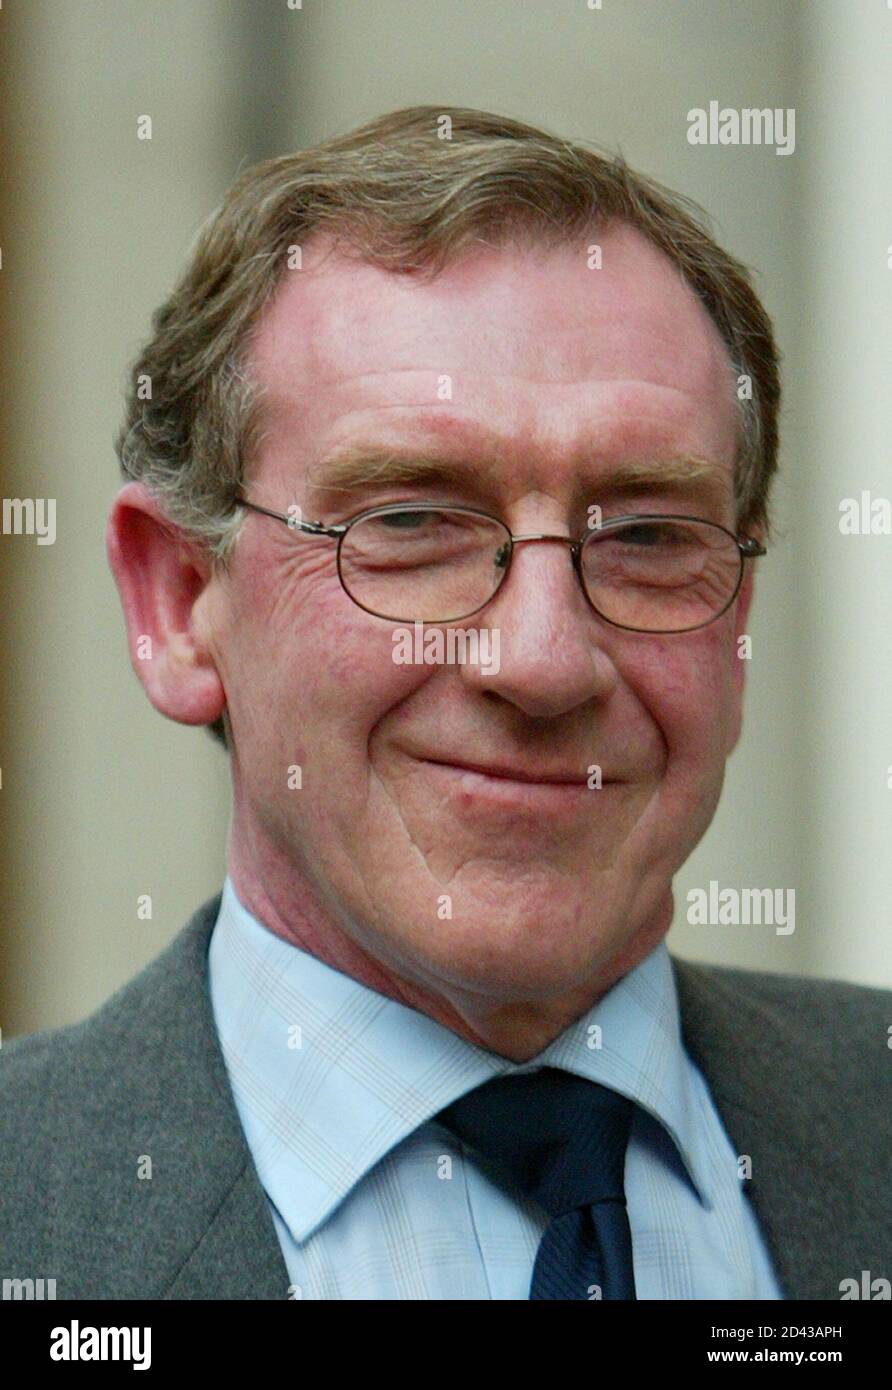 Le témoin du procès pour meurtre de Soham Richard Crook quitte le Old Bailey à Londres, le 12 novembre 2003. L'ancien gardien d'école Ian Huntley est accusé du meurtre des écolières britanniques Holly Wells et Jessica Chapman, dans le village de Soham, dans le sud de l'Angleterre, en août 2002. REUTERS/Peter Macdiarmid PKM/MD Banque D'Images